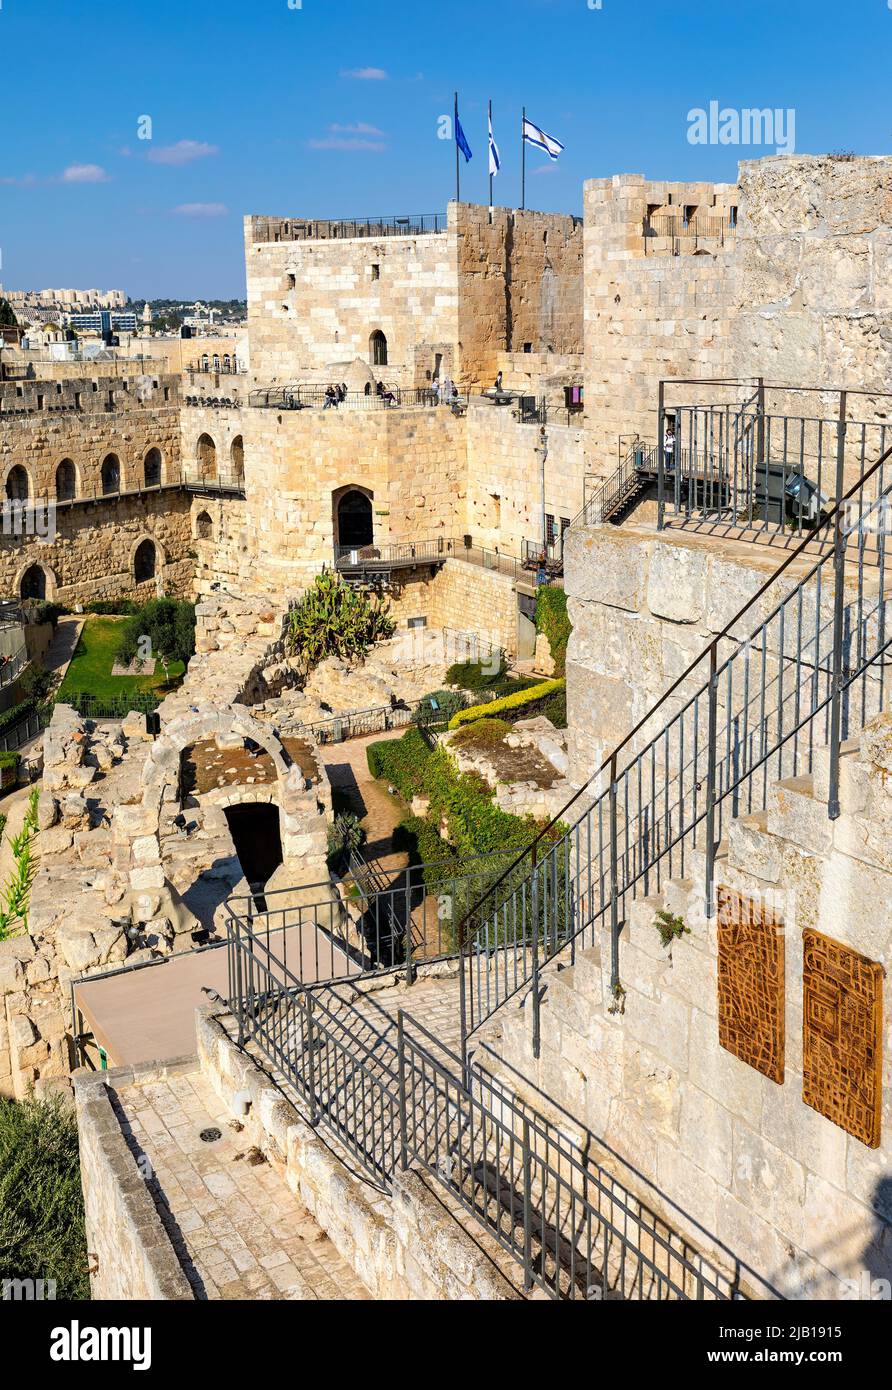 Jerusalem, Israel - 12. Oktober 2017: Innenhof, Mauern und archäologische Ausgrabungsstätte der Festung der Davidsturm-Zitadelle in der Altstadt Stockfoto